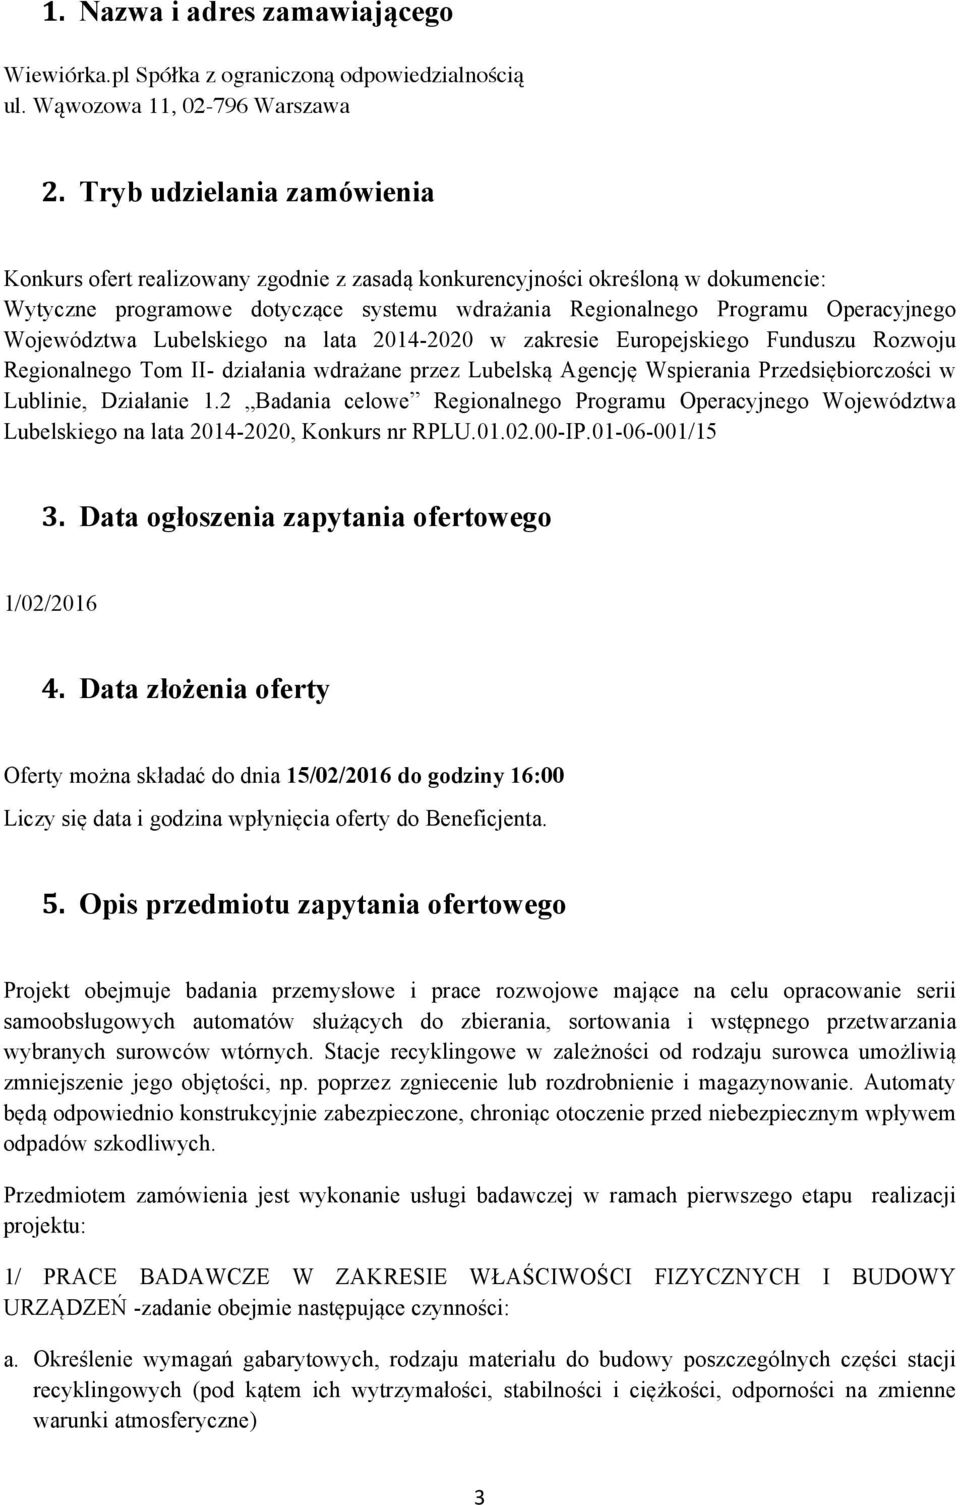 Województwa Lubelskiego na lata 2014-2020 w zakresie Europejskiego Funduszu Rozwoju Regionalnego Tom II- działania wdrażane przez Lubelską Agencję Wspierania Przedsiębiorczości w Lublinie, Działanie